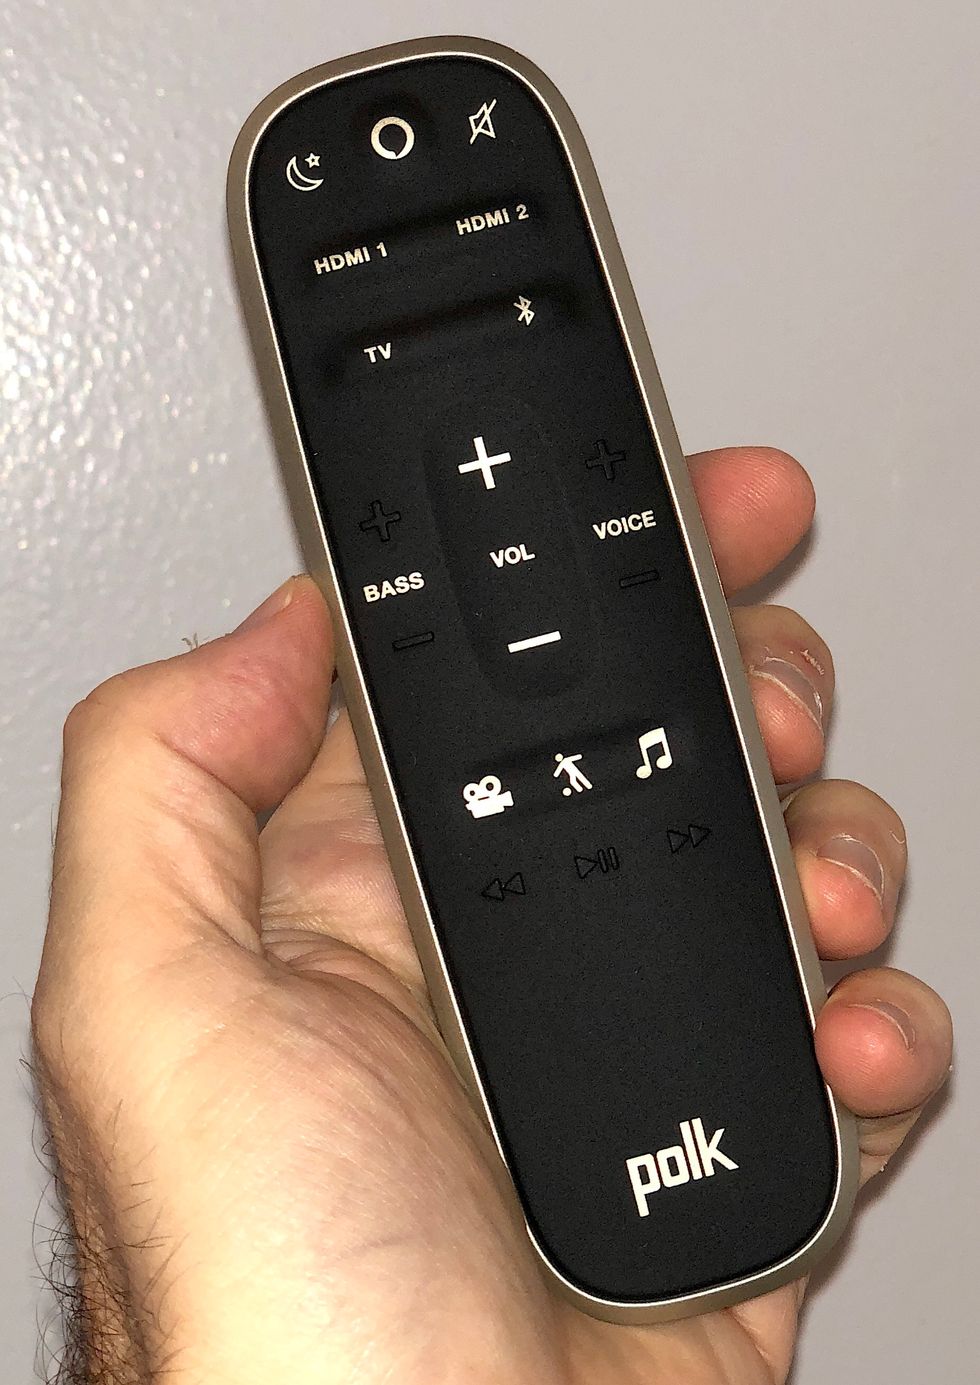 a photo of Polk soundbar's remote